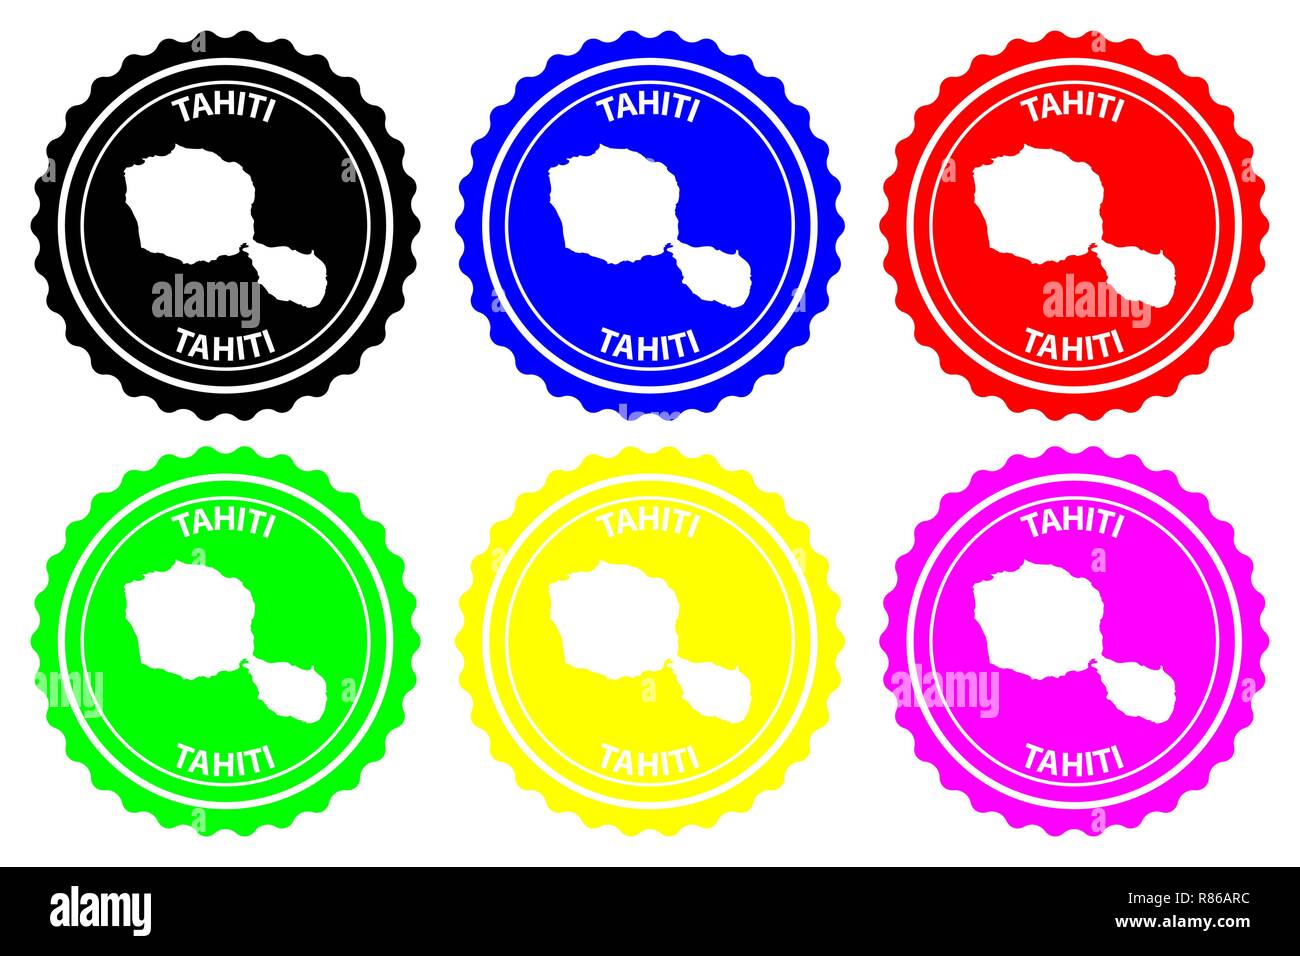 Tahiti - rubber stamp - vecteur, Tahiti carte - sticker - noir, bleu, vert, jaune, violet et rouge Illustration de Vecteur